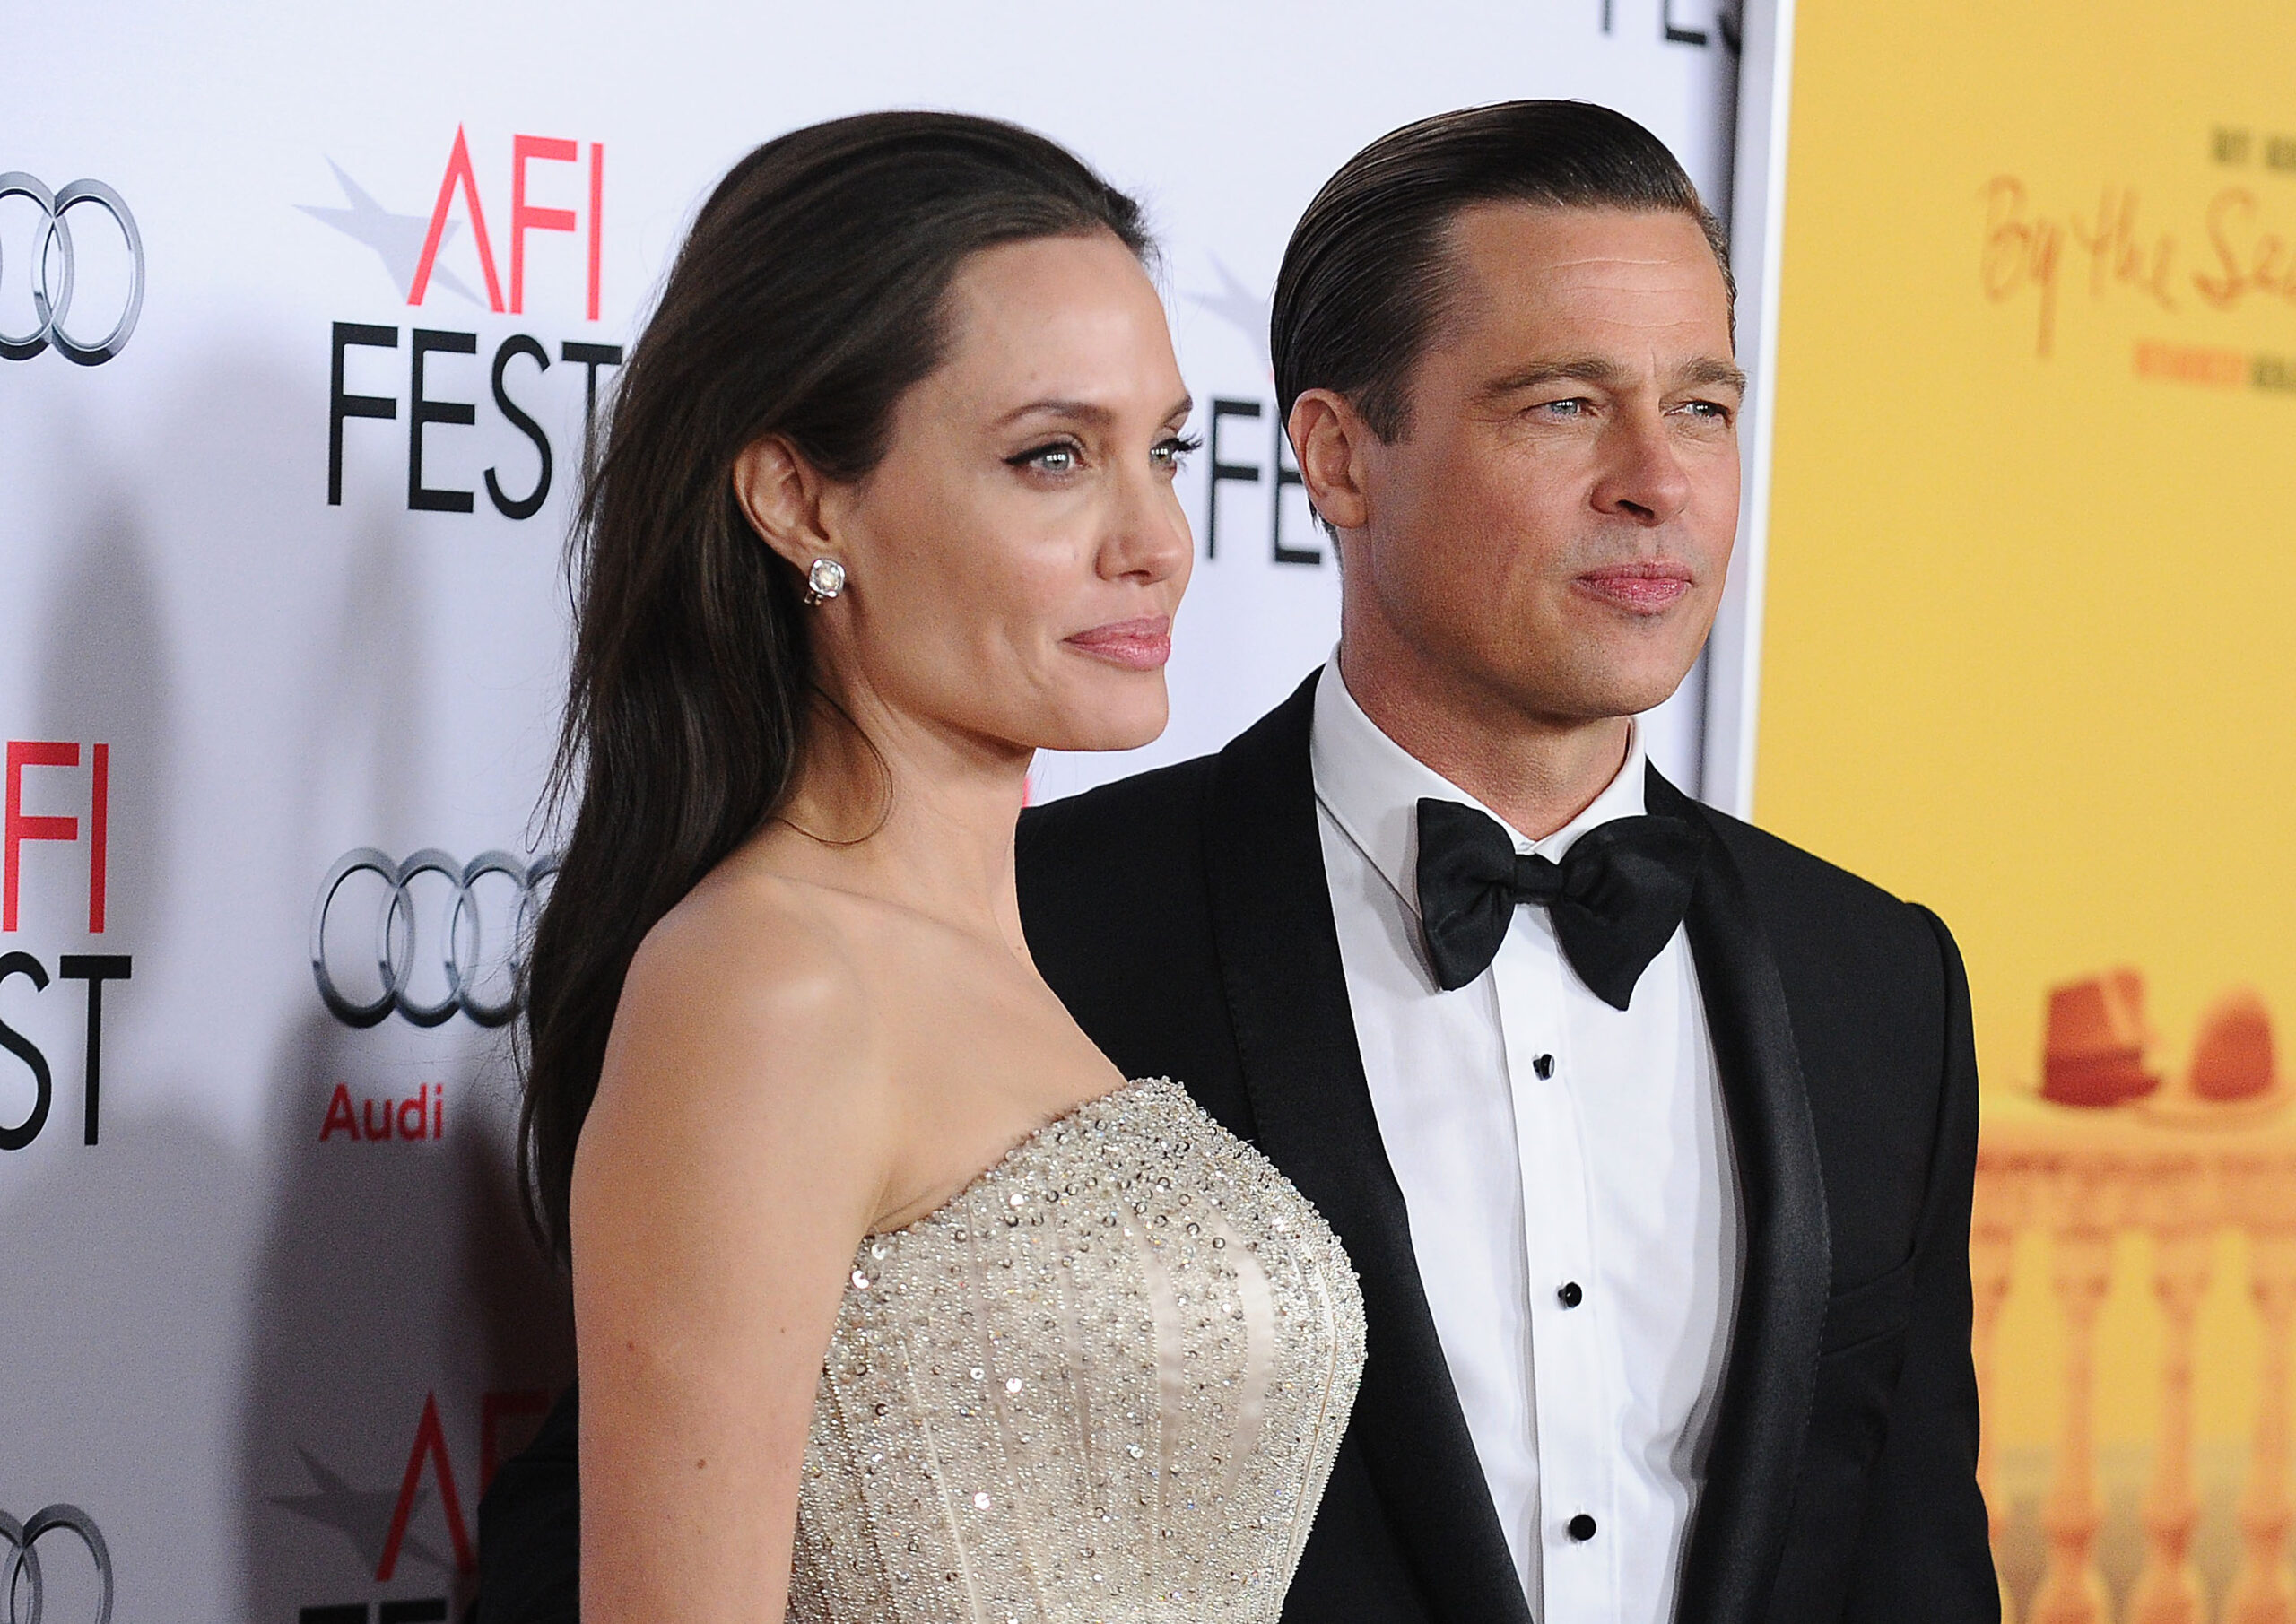 Angelina Jolie és Brad Pitt lánya arra kérte a bíróságot, hogy töröljék nevéből apja vezetéknevét